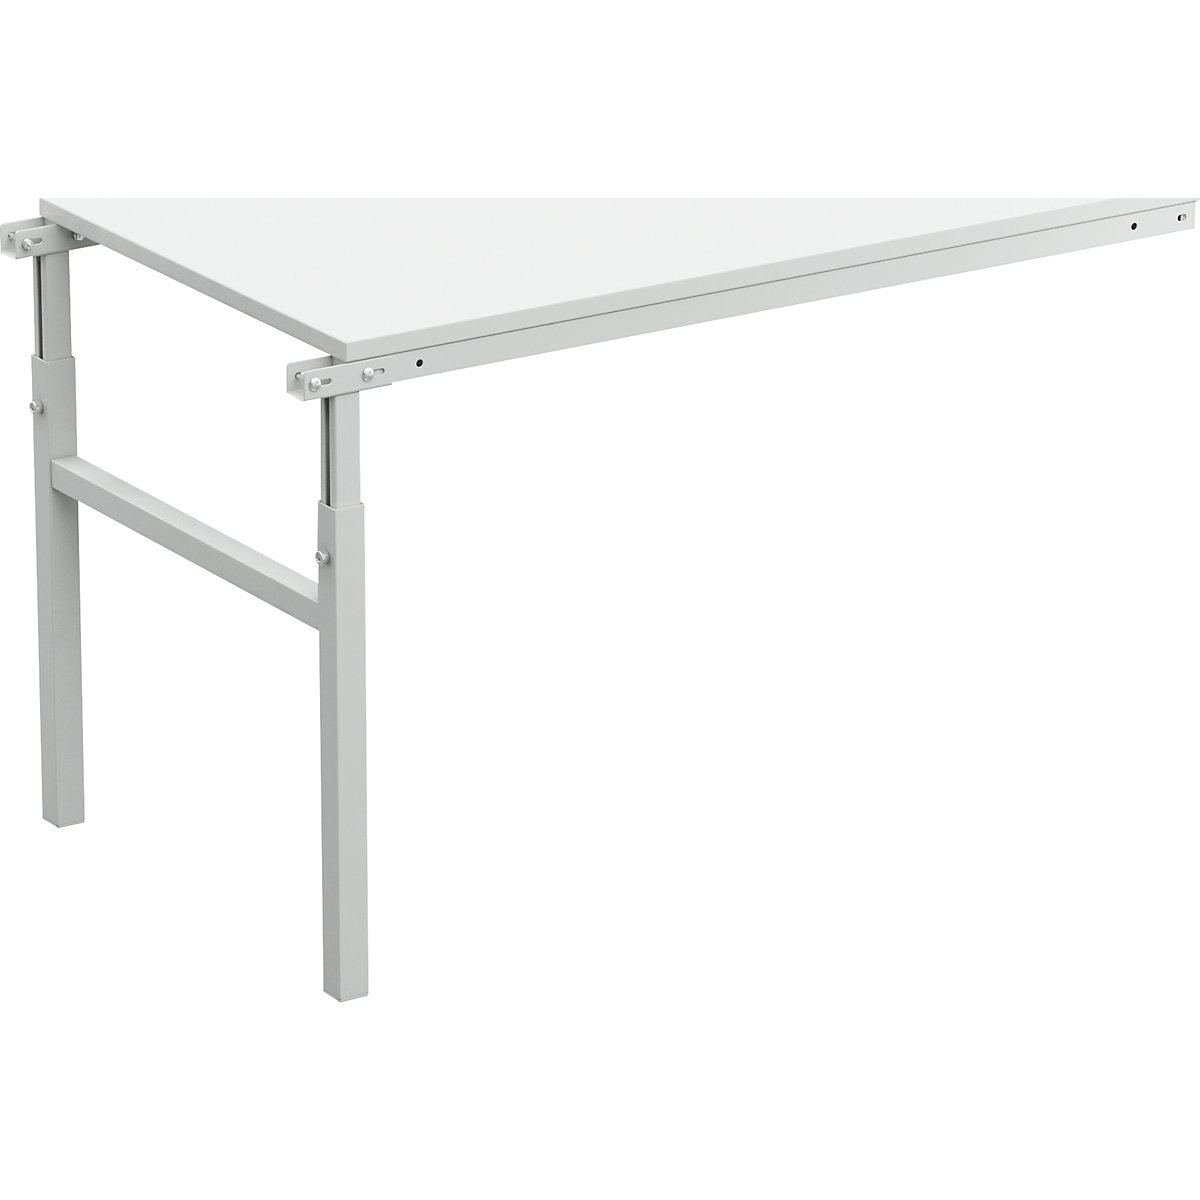 Treston – Pracovní stůl s ručním přestavováním výšky v rozsahu 650 až 900 mm (Obrázek výrobku 4)